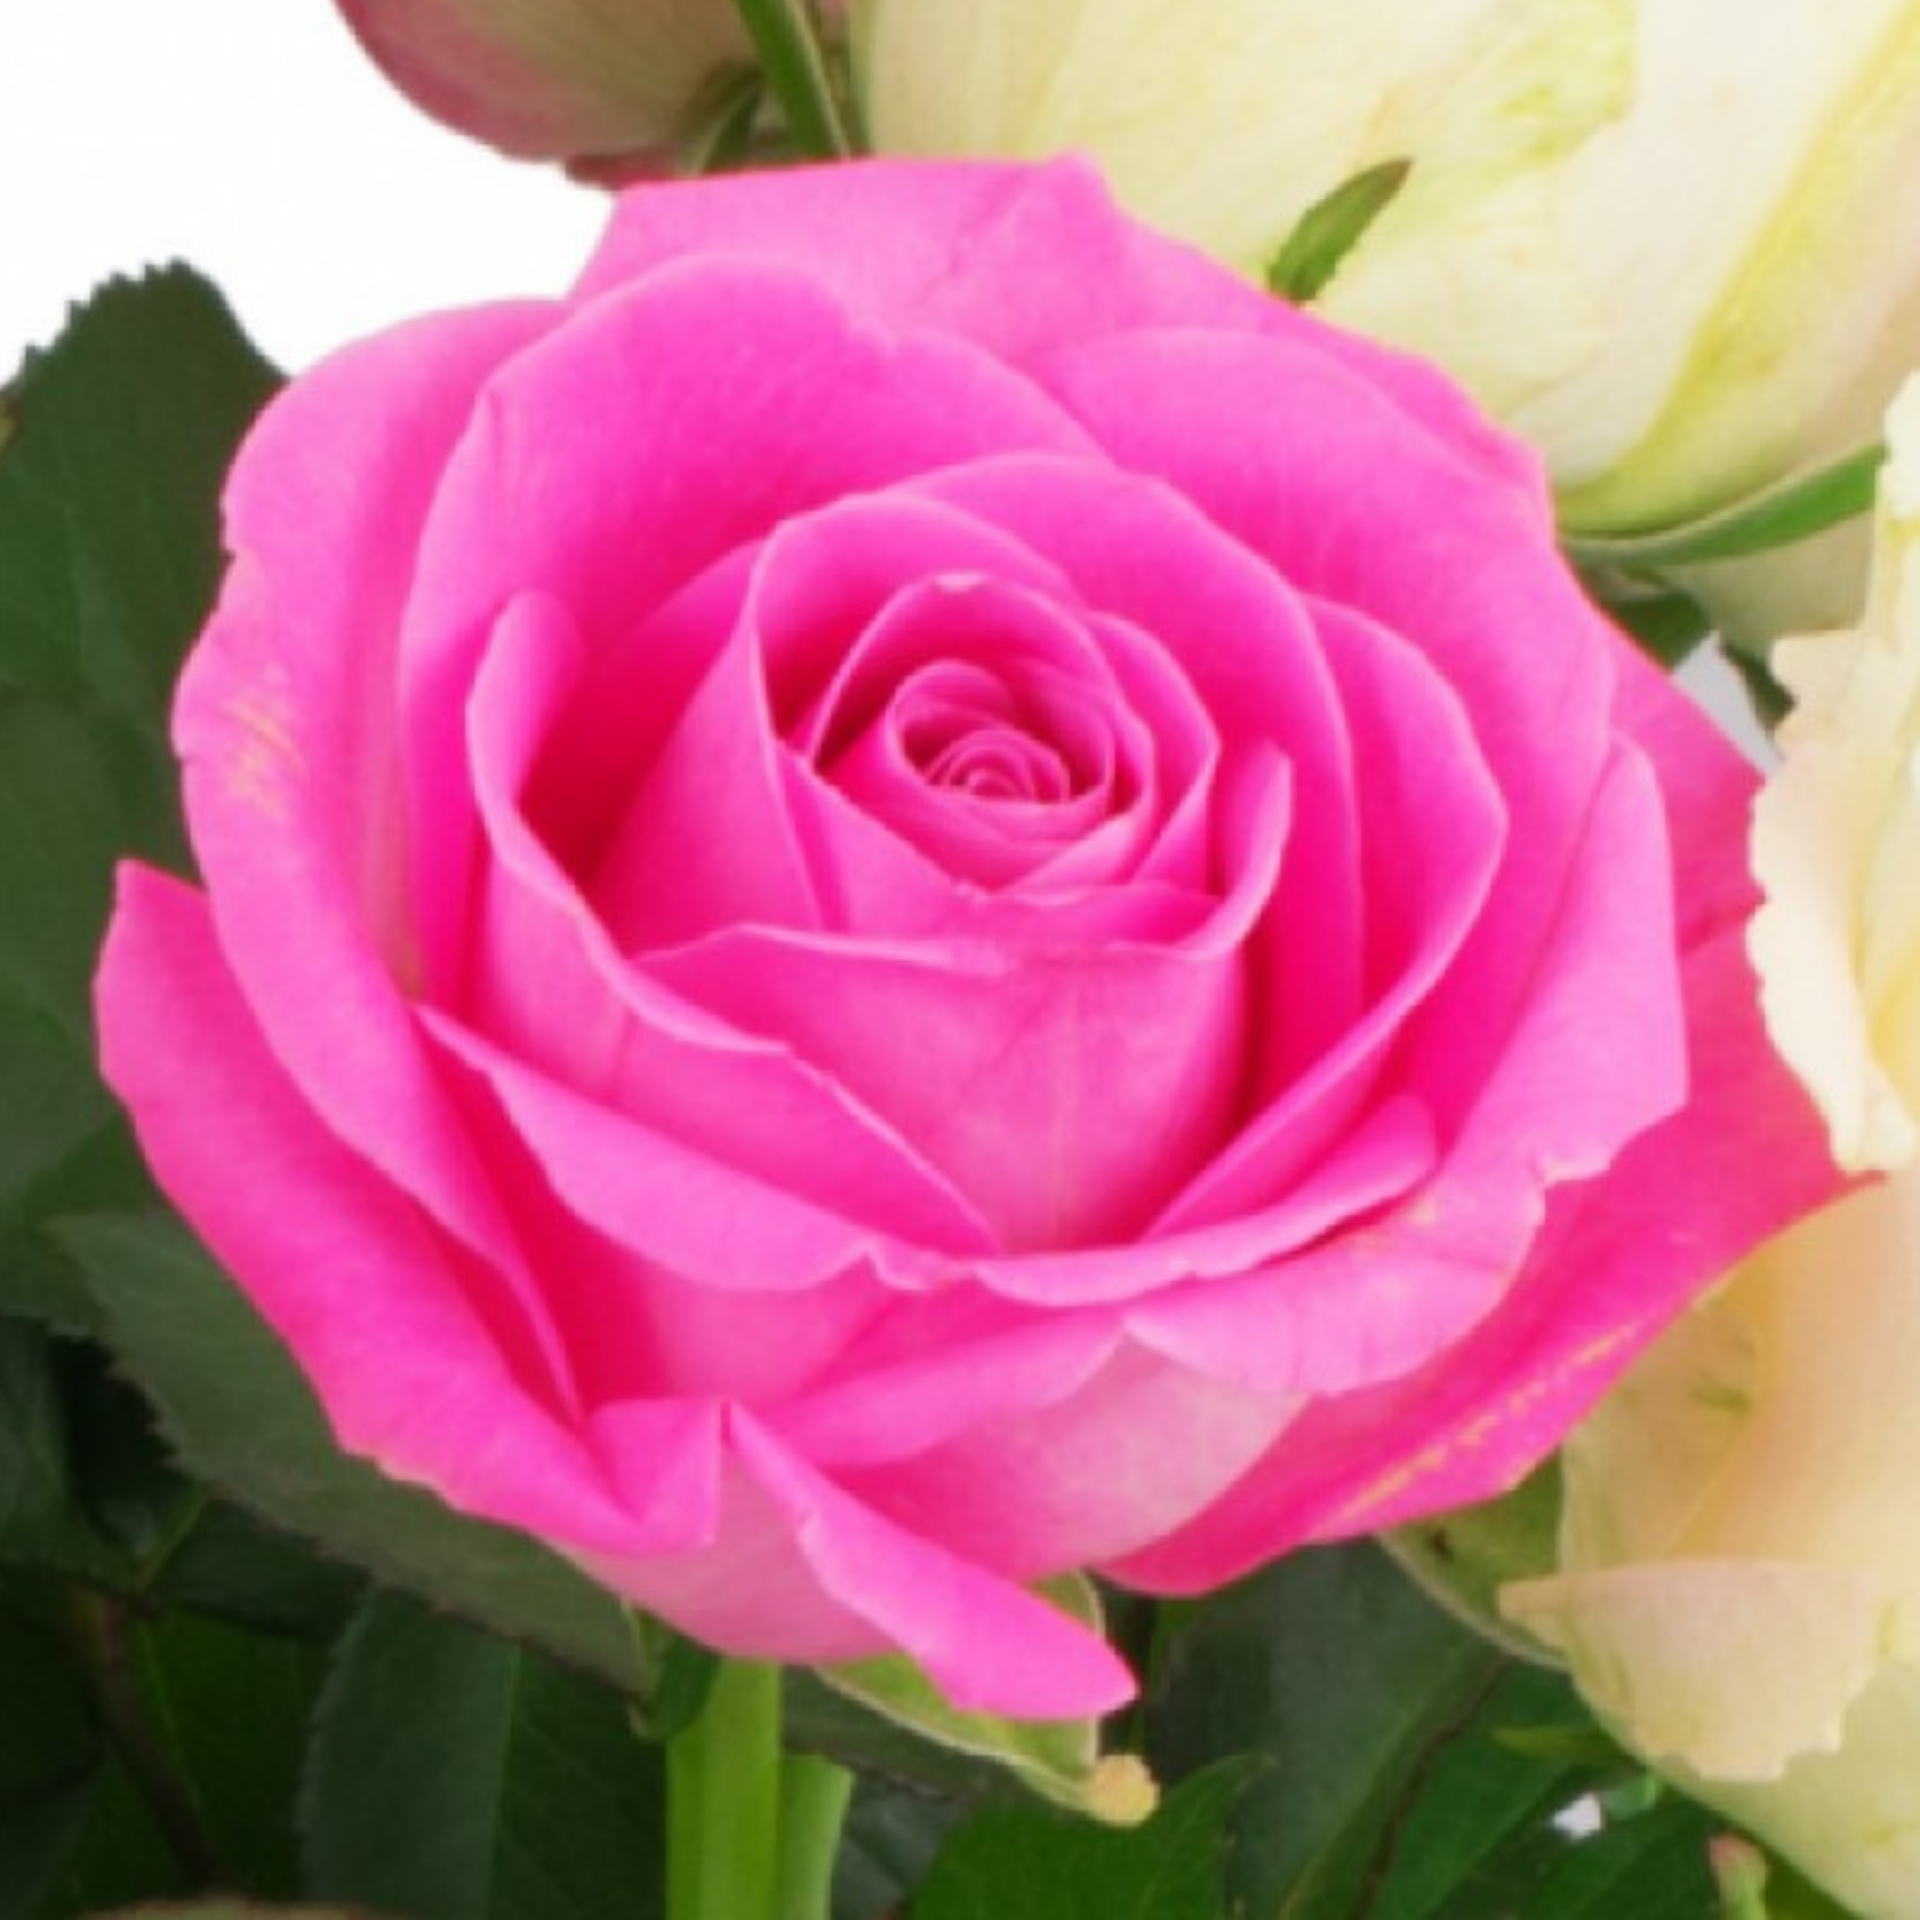 Rosenstrauß 15 rosa-weiße Rosen